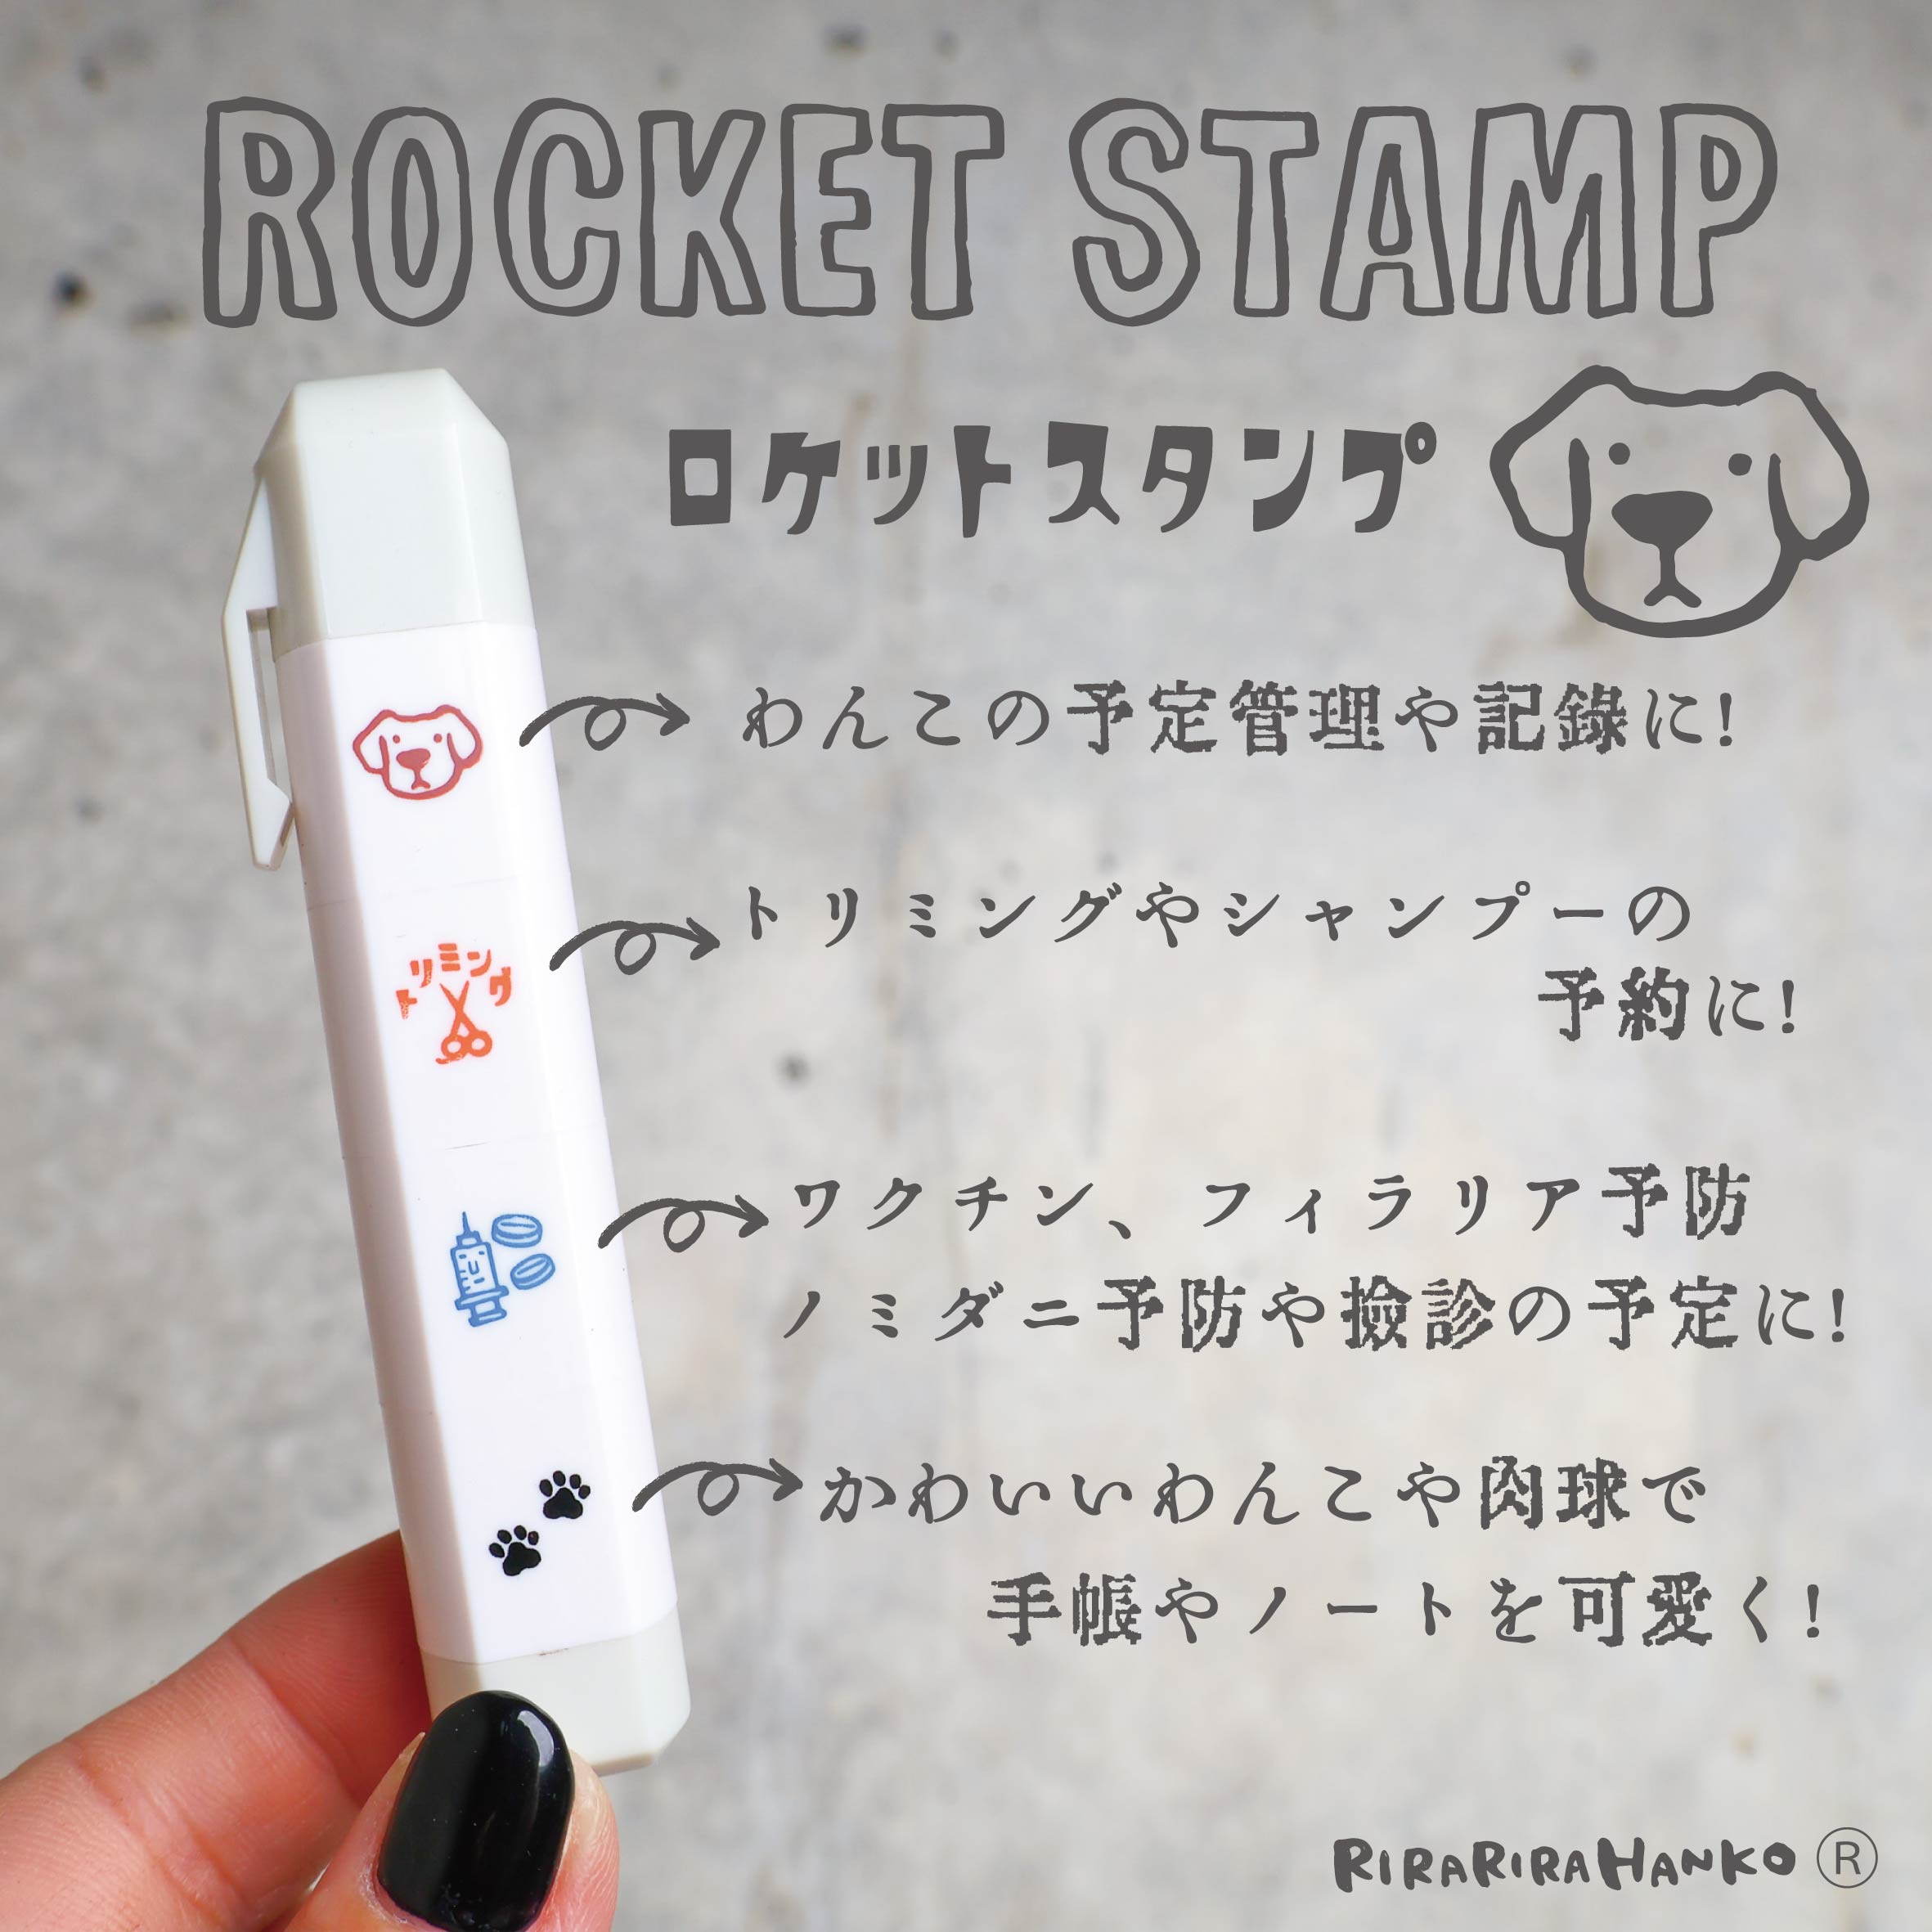 Rocket Stamp (DOG1)